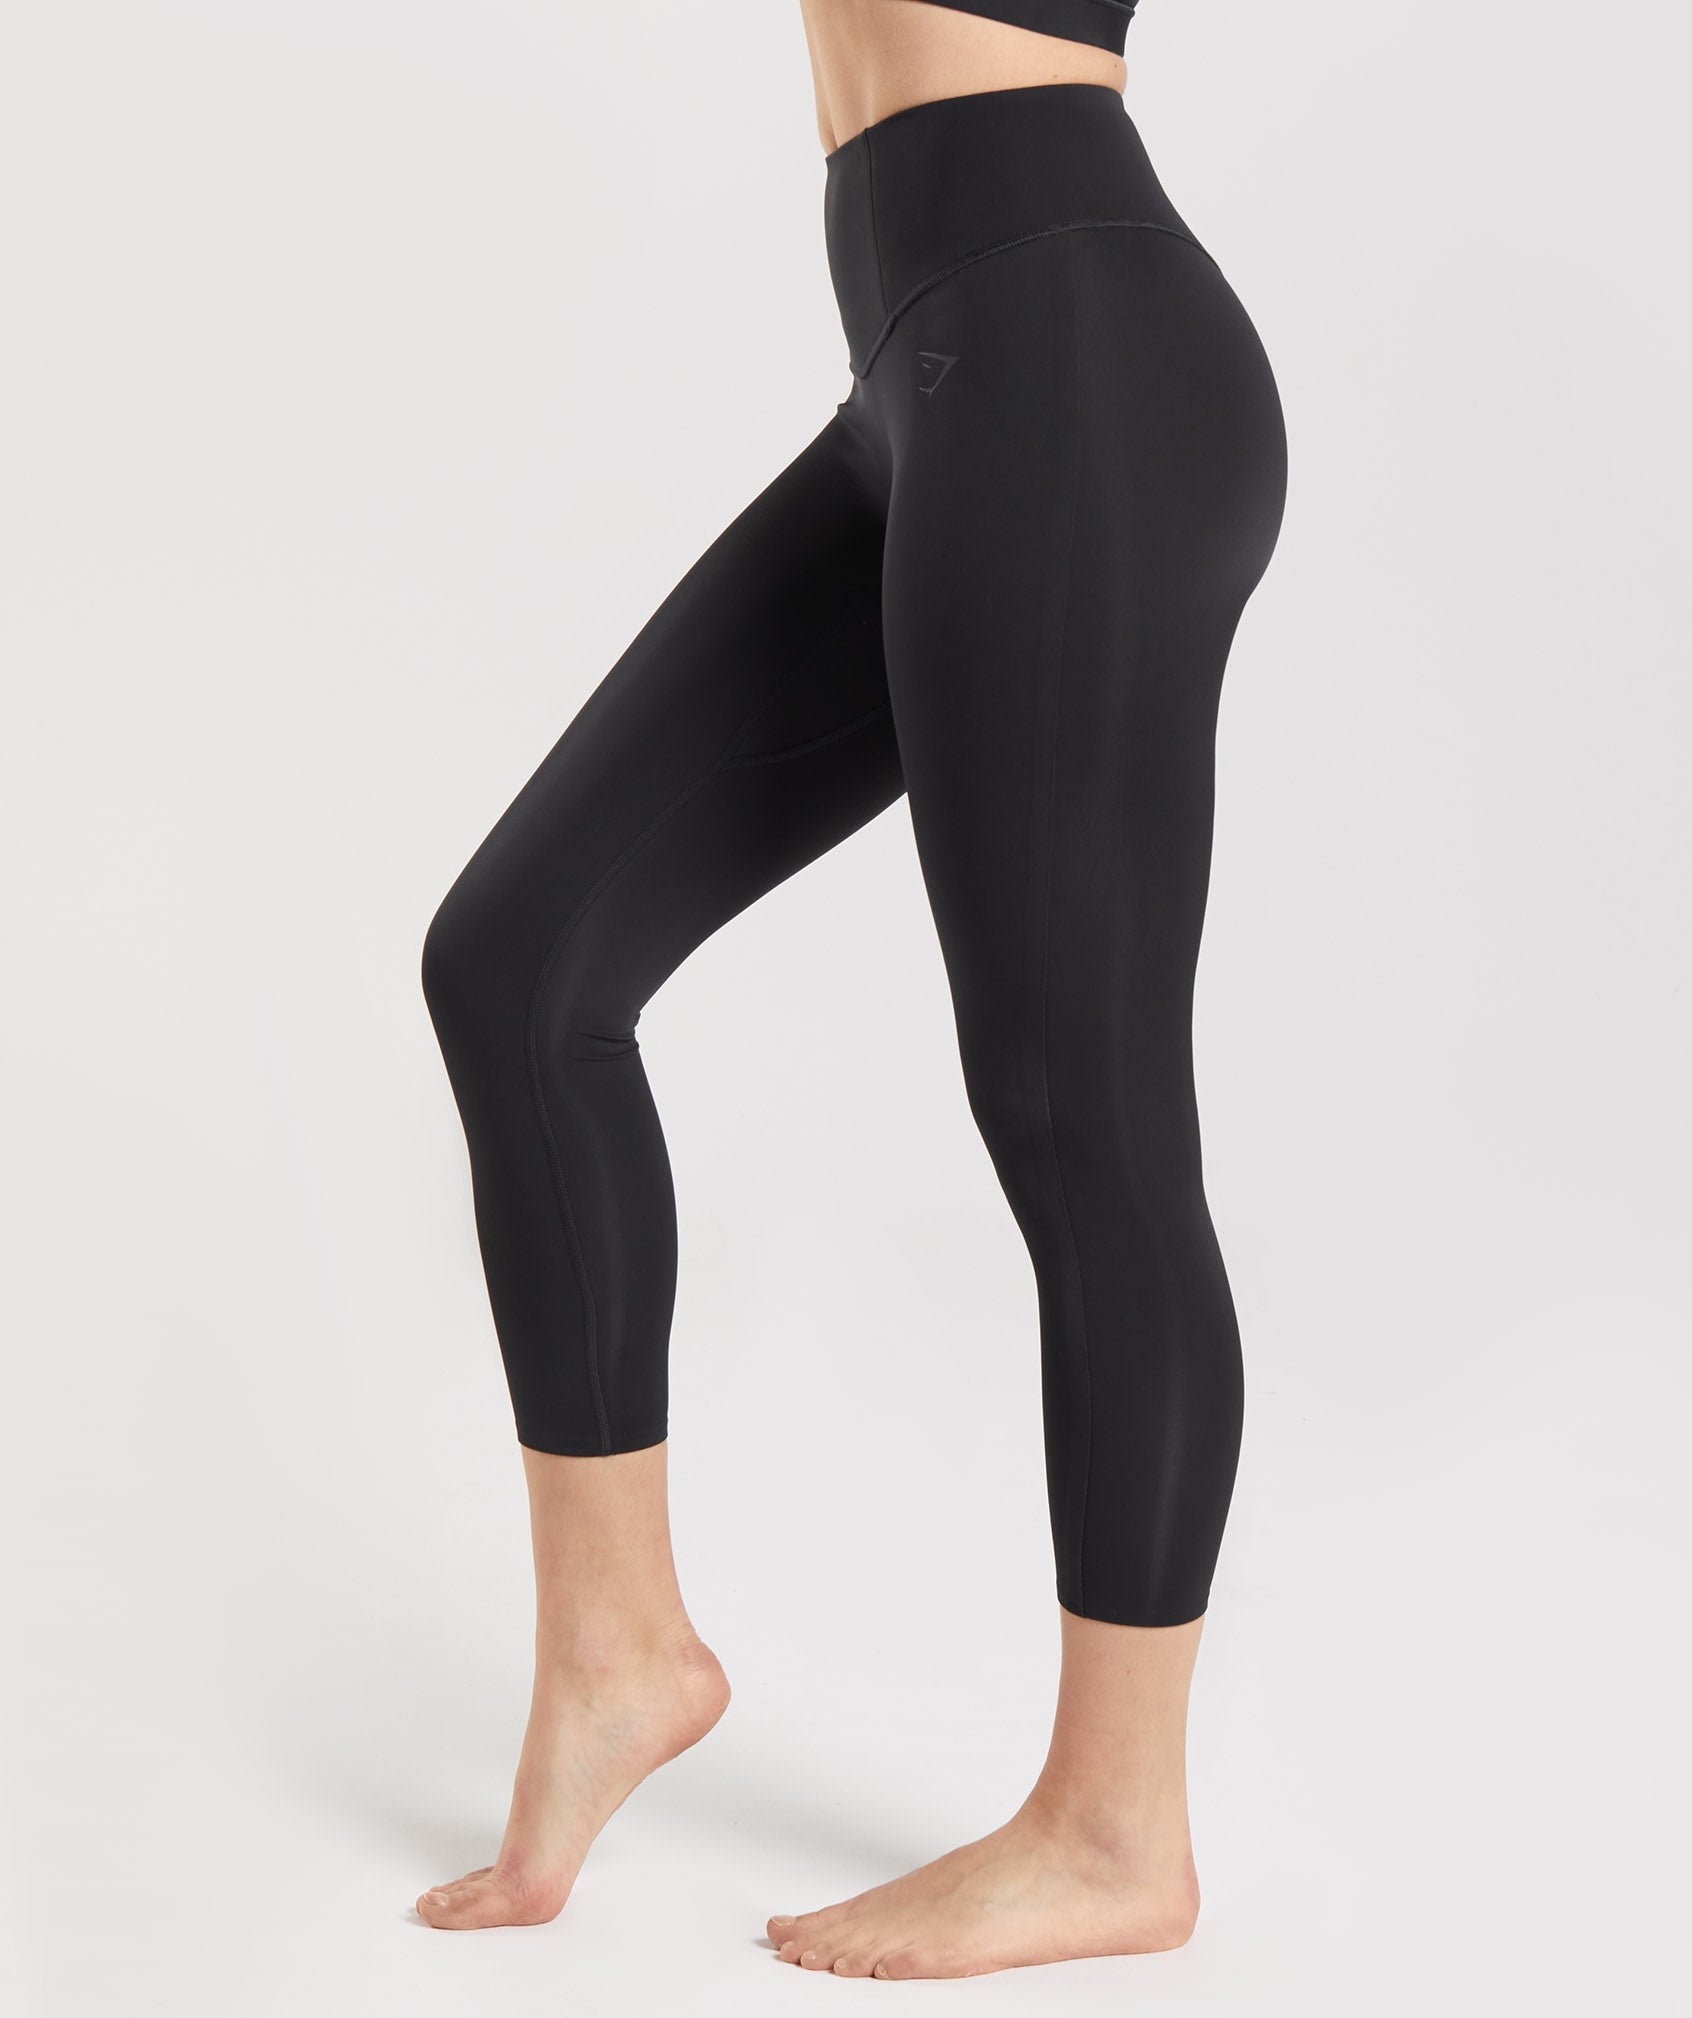 Gymshark Black High Rise Training Activewear Cropped Leggings Womens Size  Medium спортивная одежда купить недорого в интернет-магазине